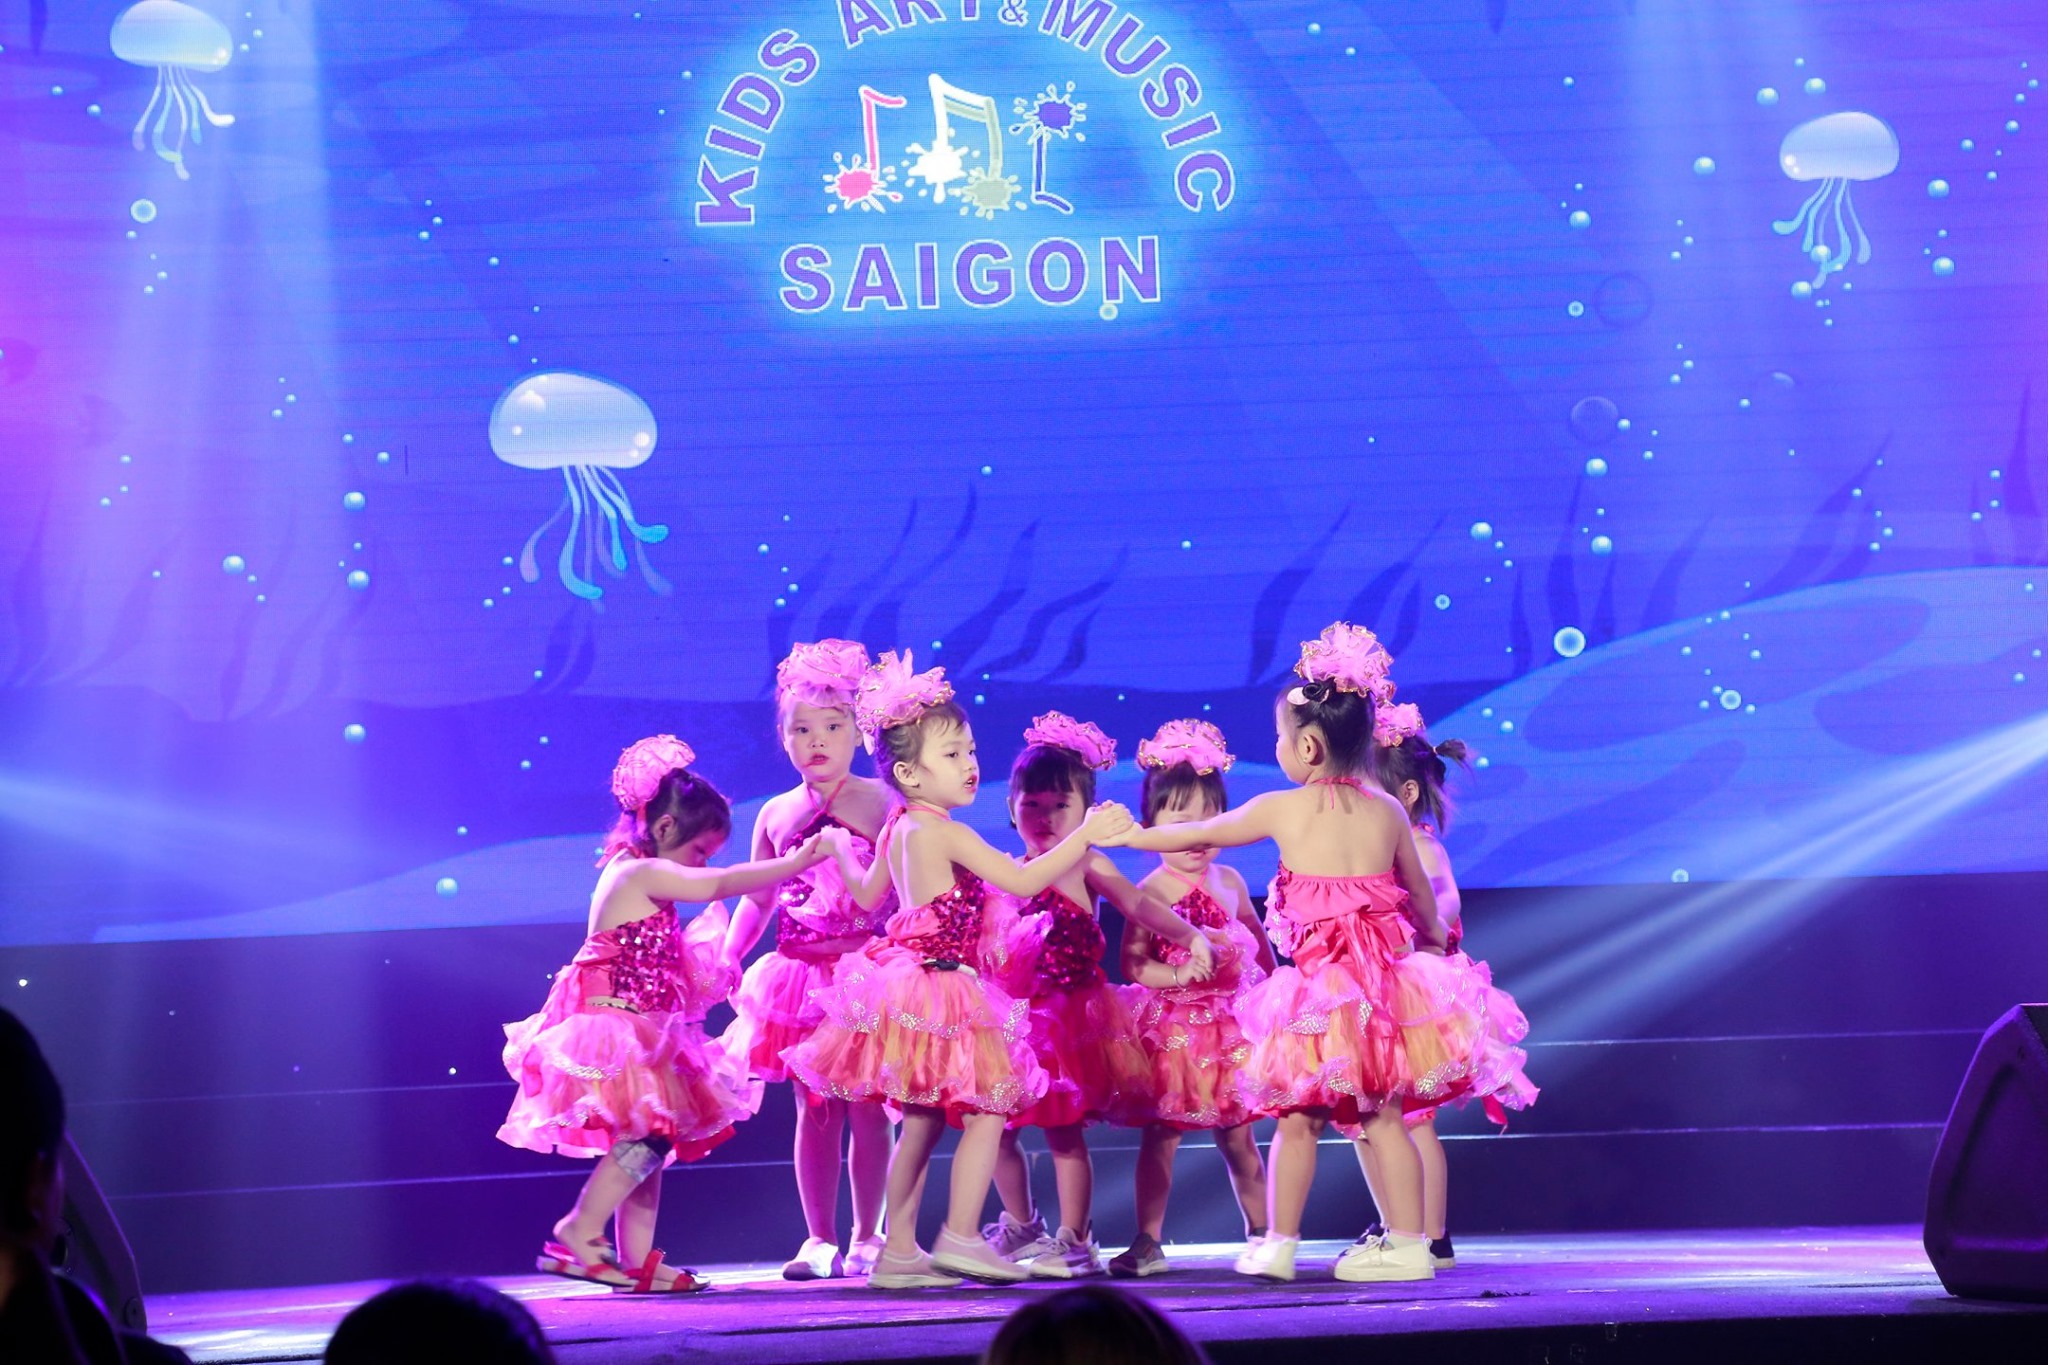 Tổng hợp các màn trình diễn múa ballet thiếu nhi tại Kids Art & Music Sài Gòn